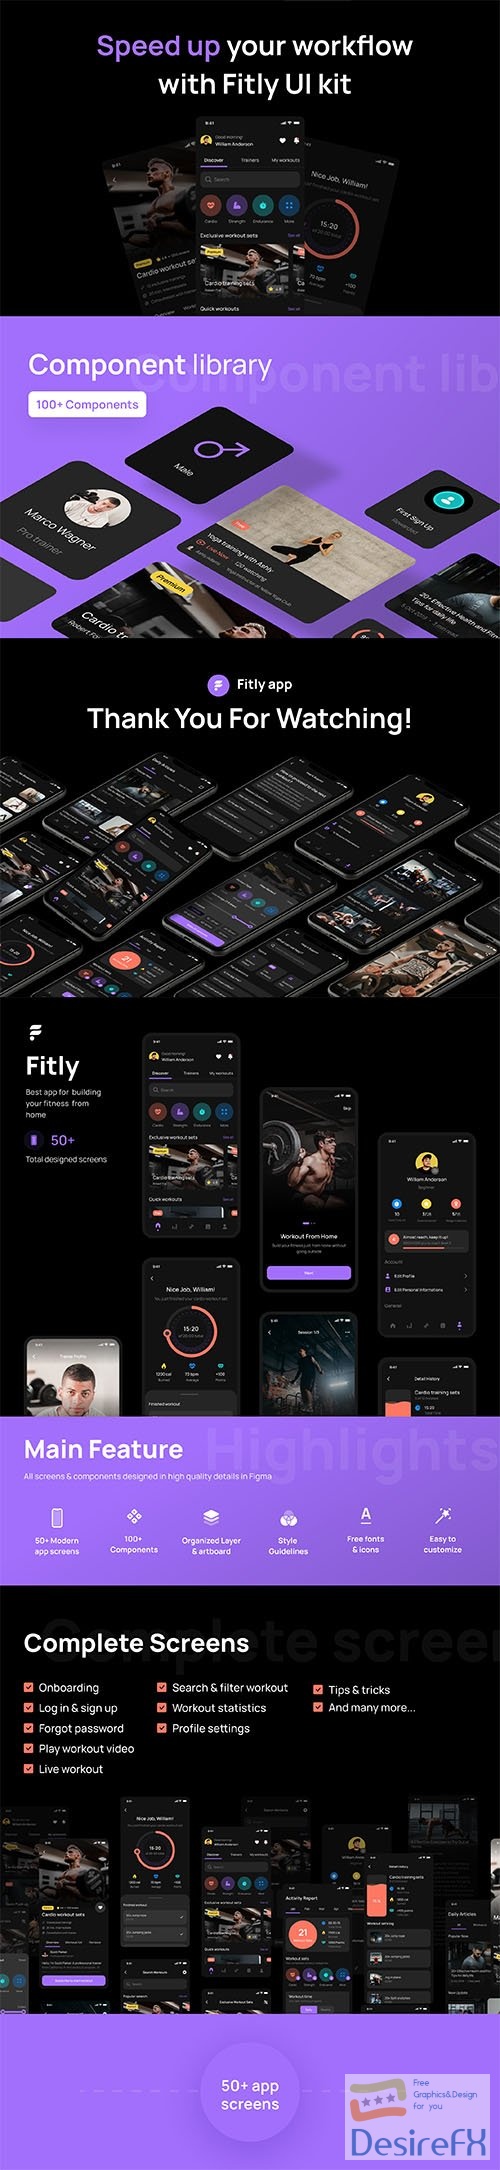 Fitly App - Modern Fitness App UI Design Kit - UI8